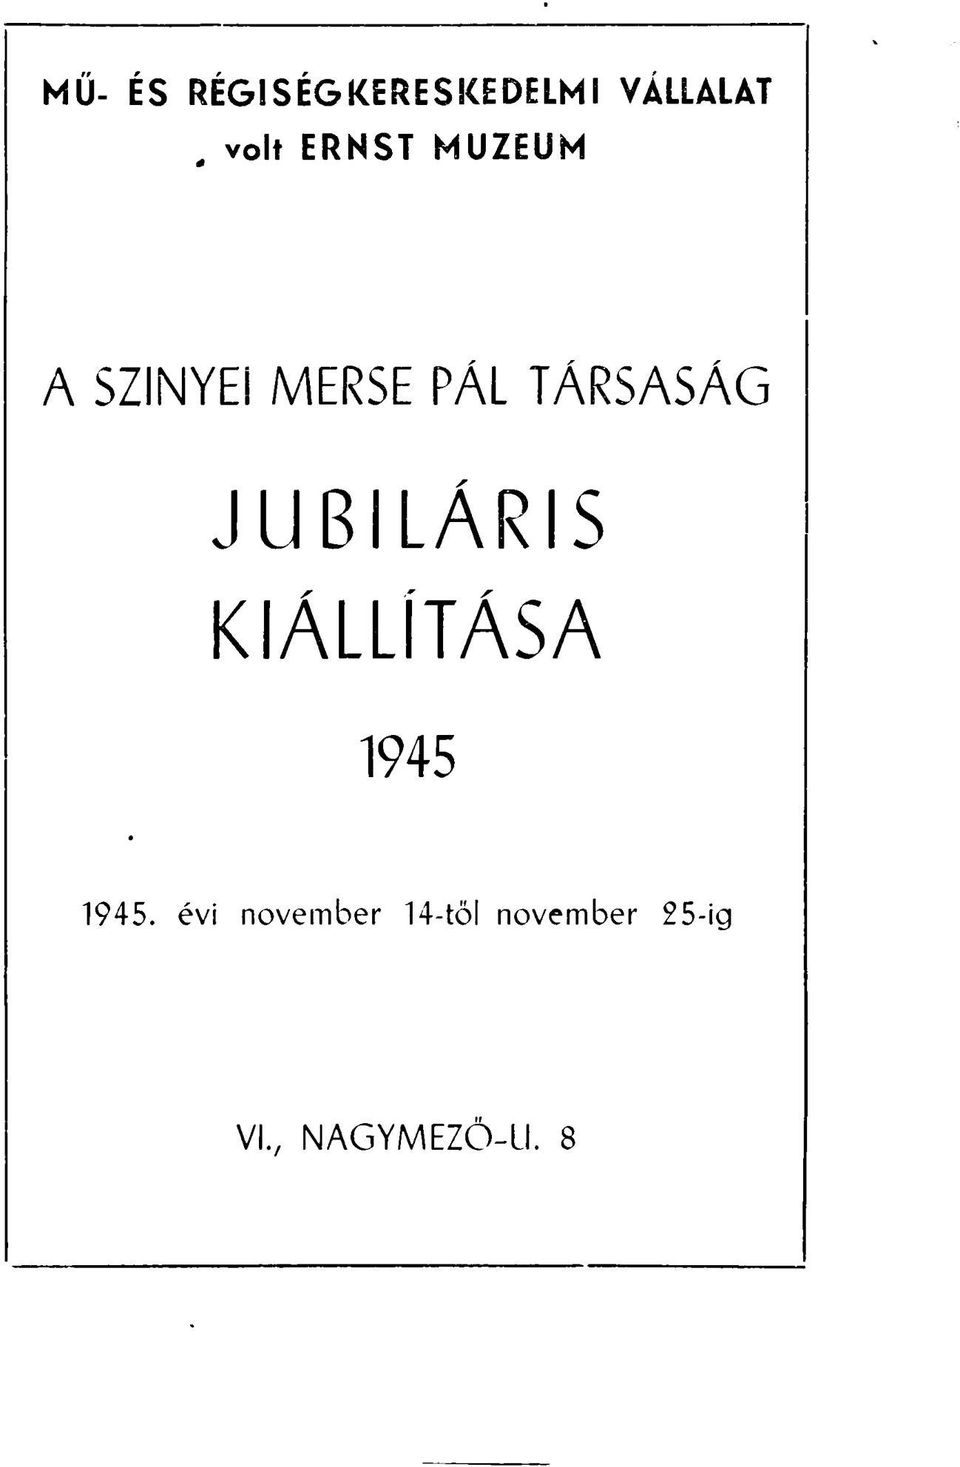 JUBILÁRIS KIÁLLÍTÁSA 1945 1945.